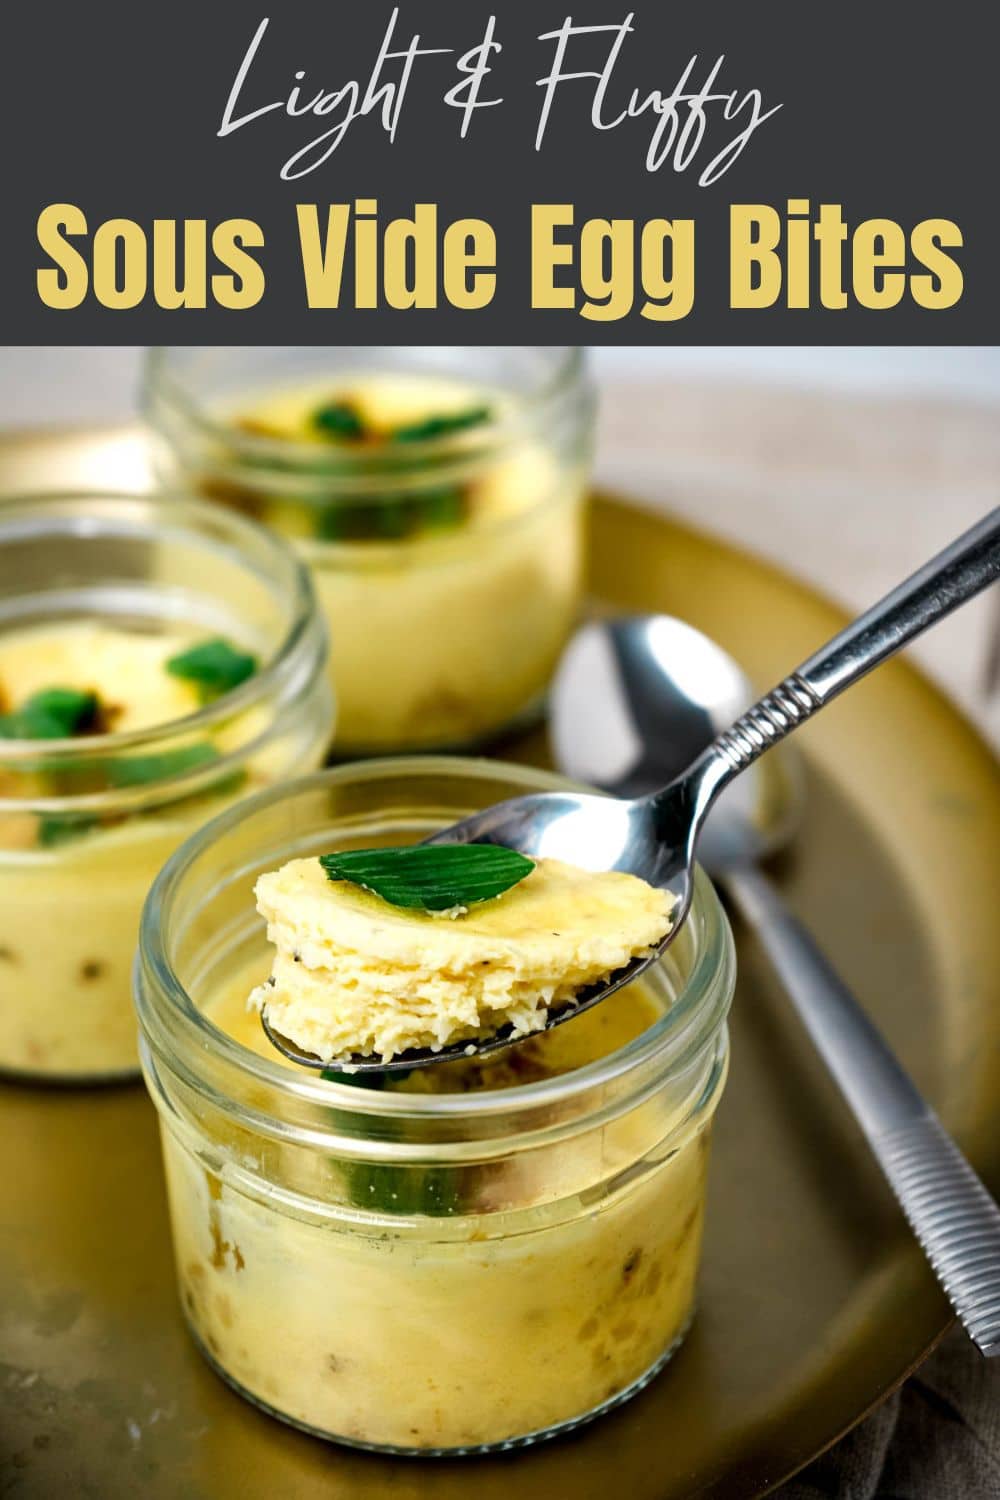 Sous Vide Egg Bites (Starbucks Egg Bites)